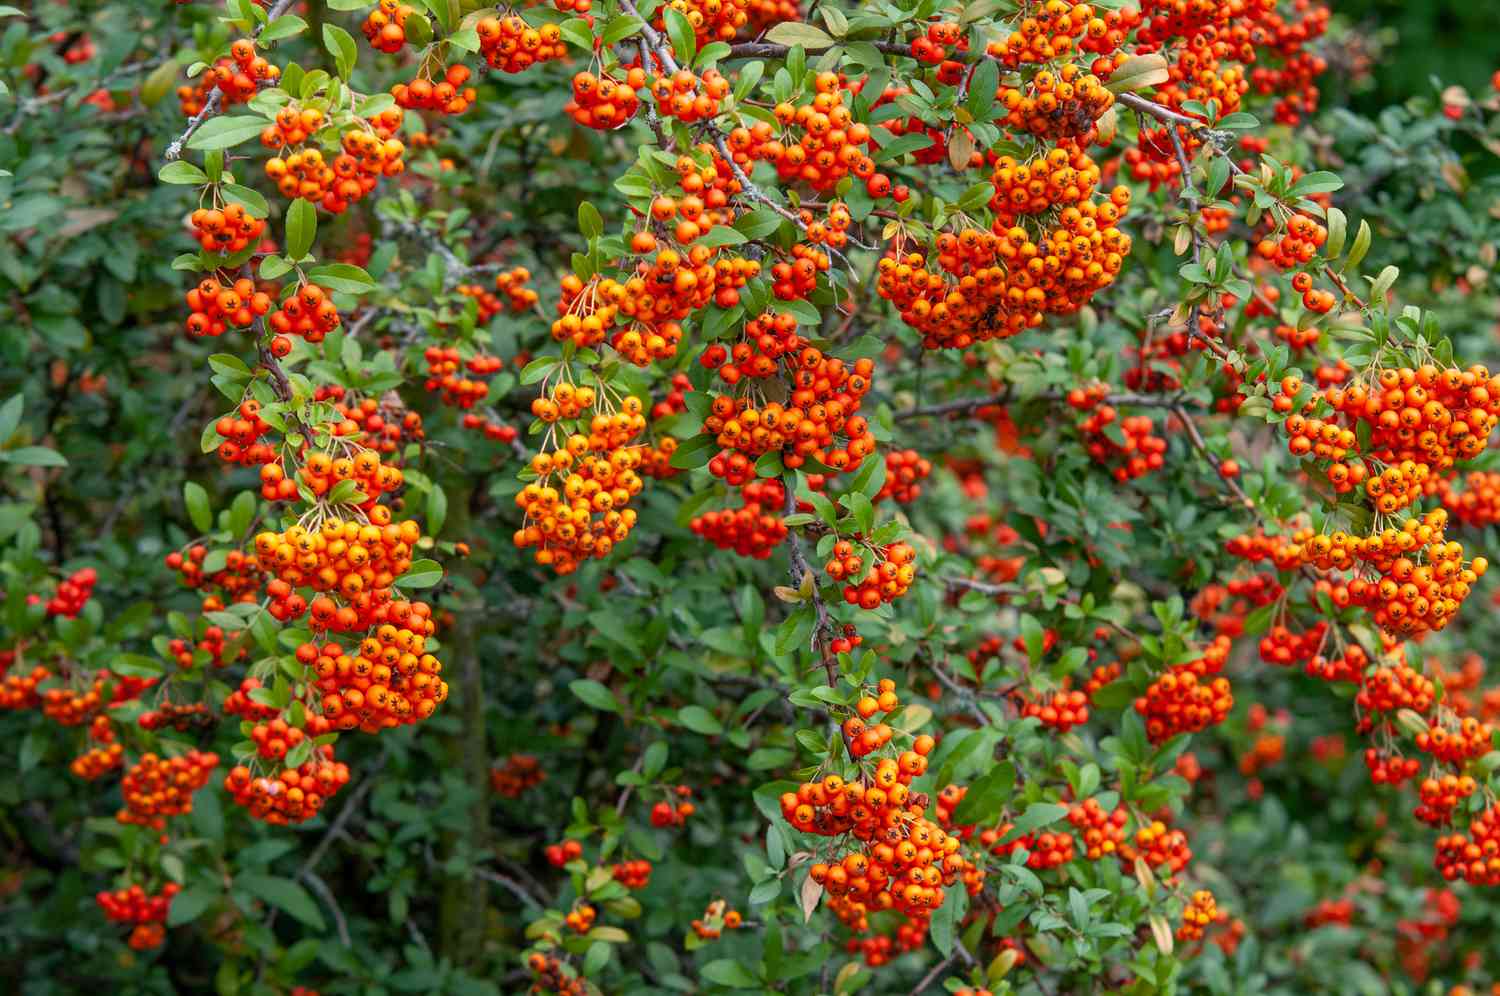 Feuerdornstrauch mit Büscheln orange-roter Beeren, die von den Zweigen hängen